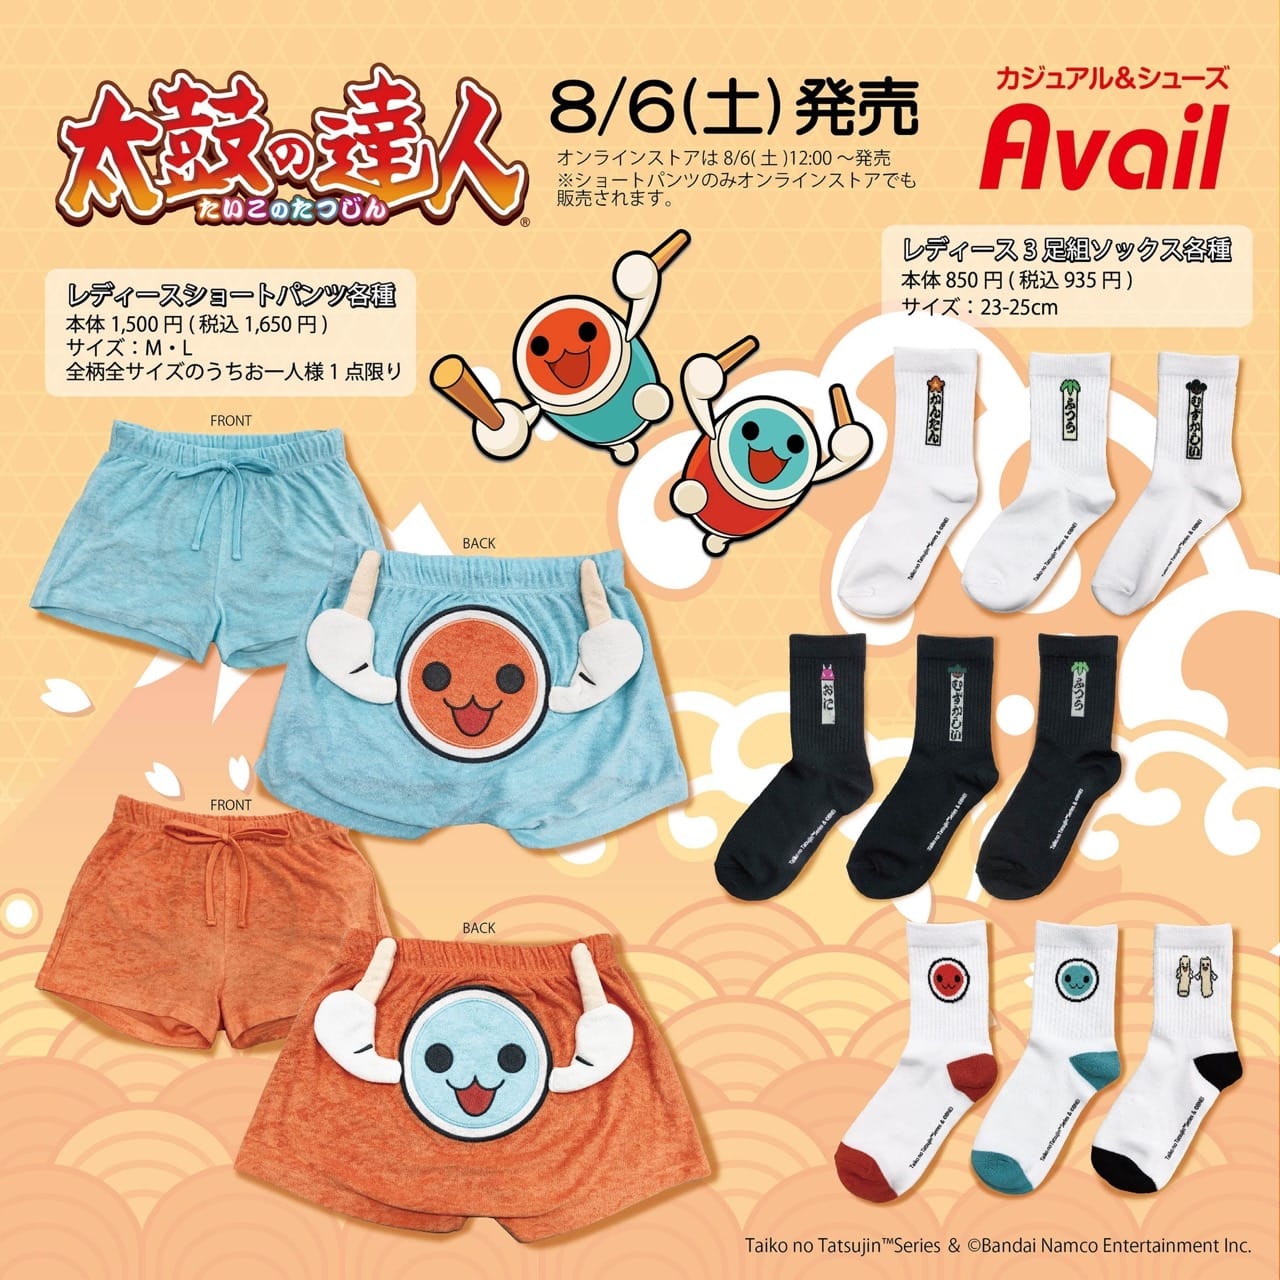 太鼓の達人 × Avail (アベイル) 全国 8月6日よりコラボアパレル2種が発売!